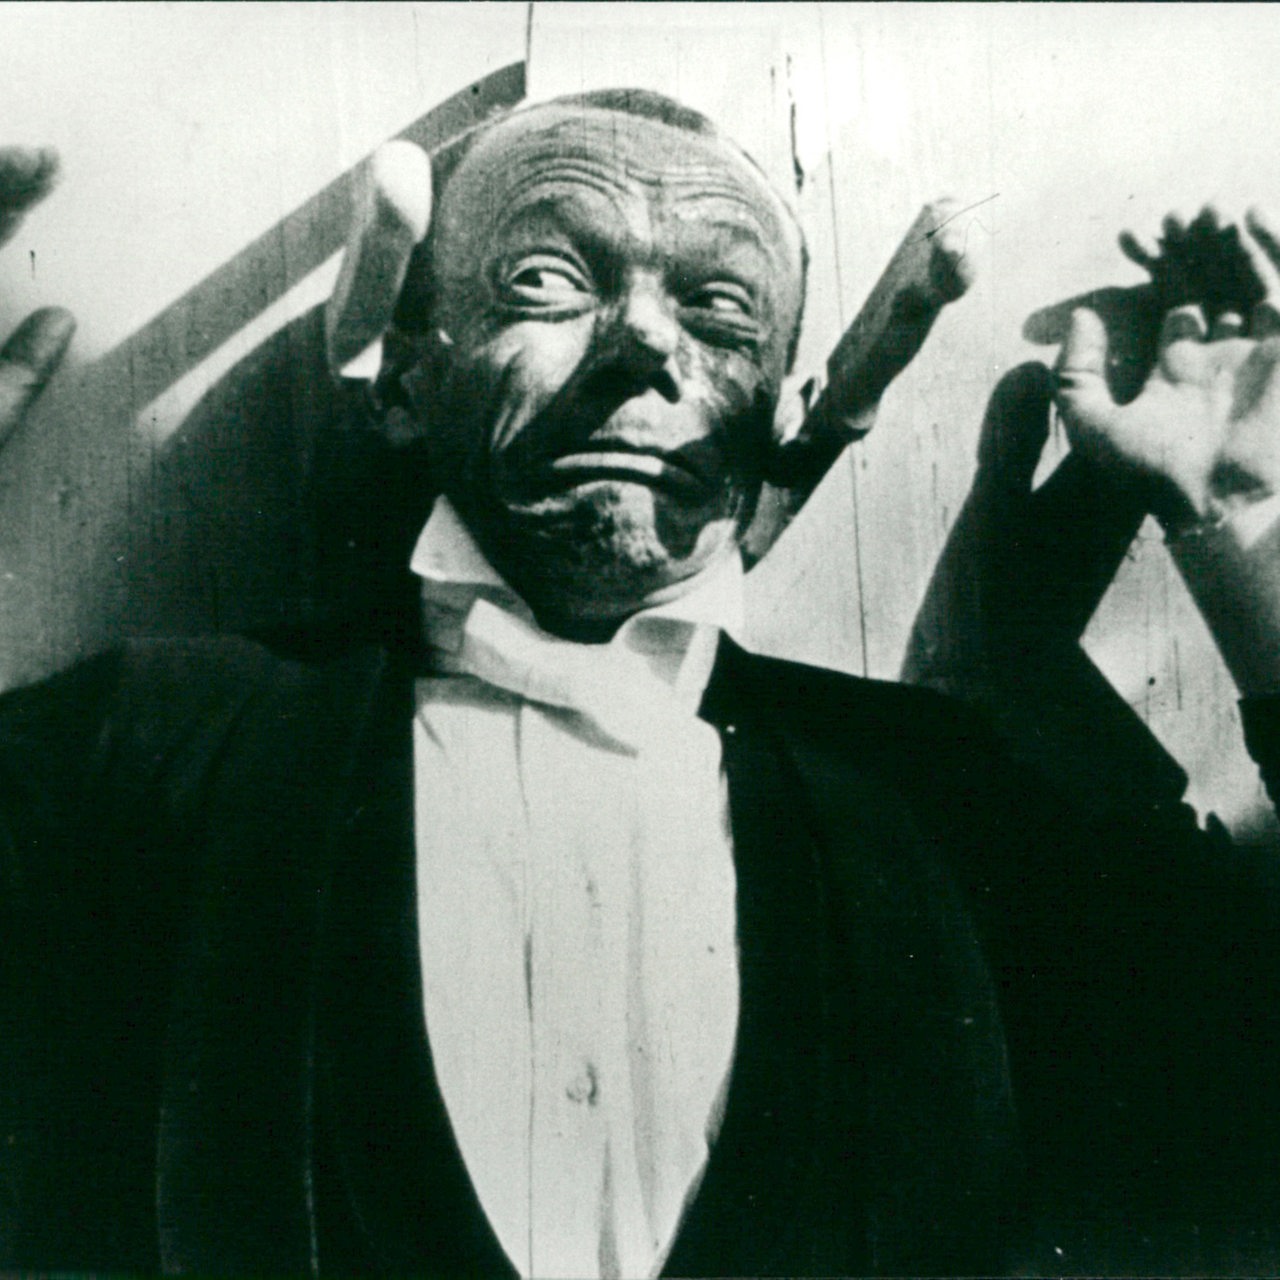 Der deutsche Komiker Karl Valentin in einer Filmszene an einer Wand mit Messern.